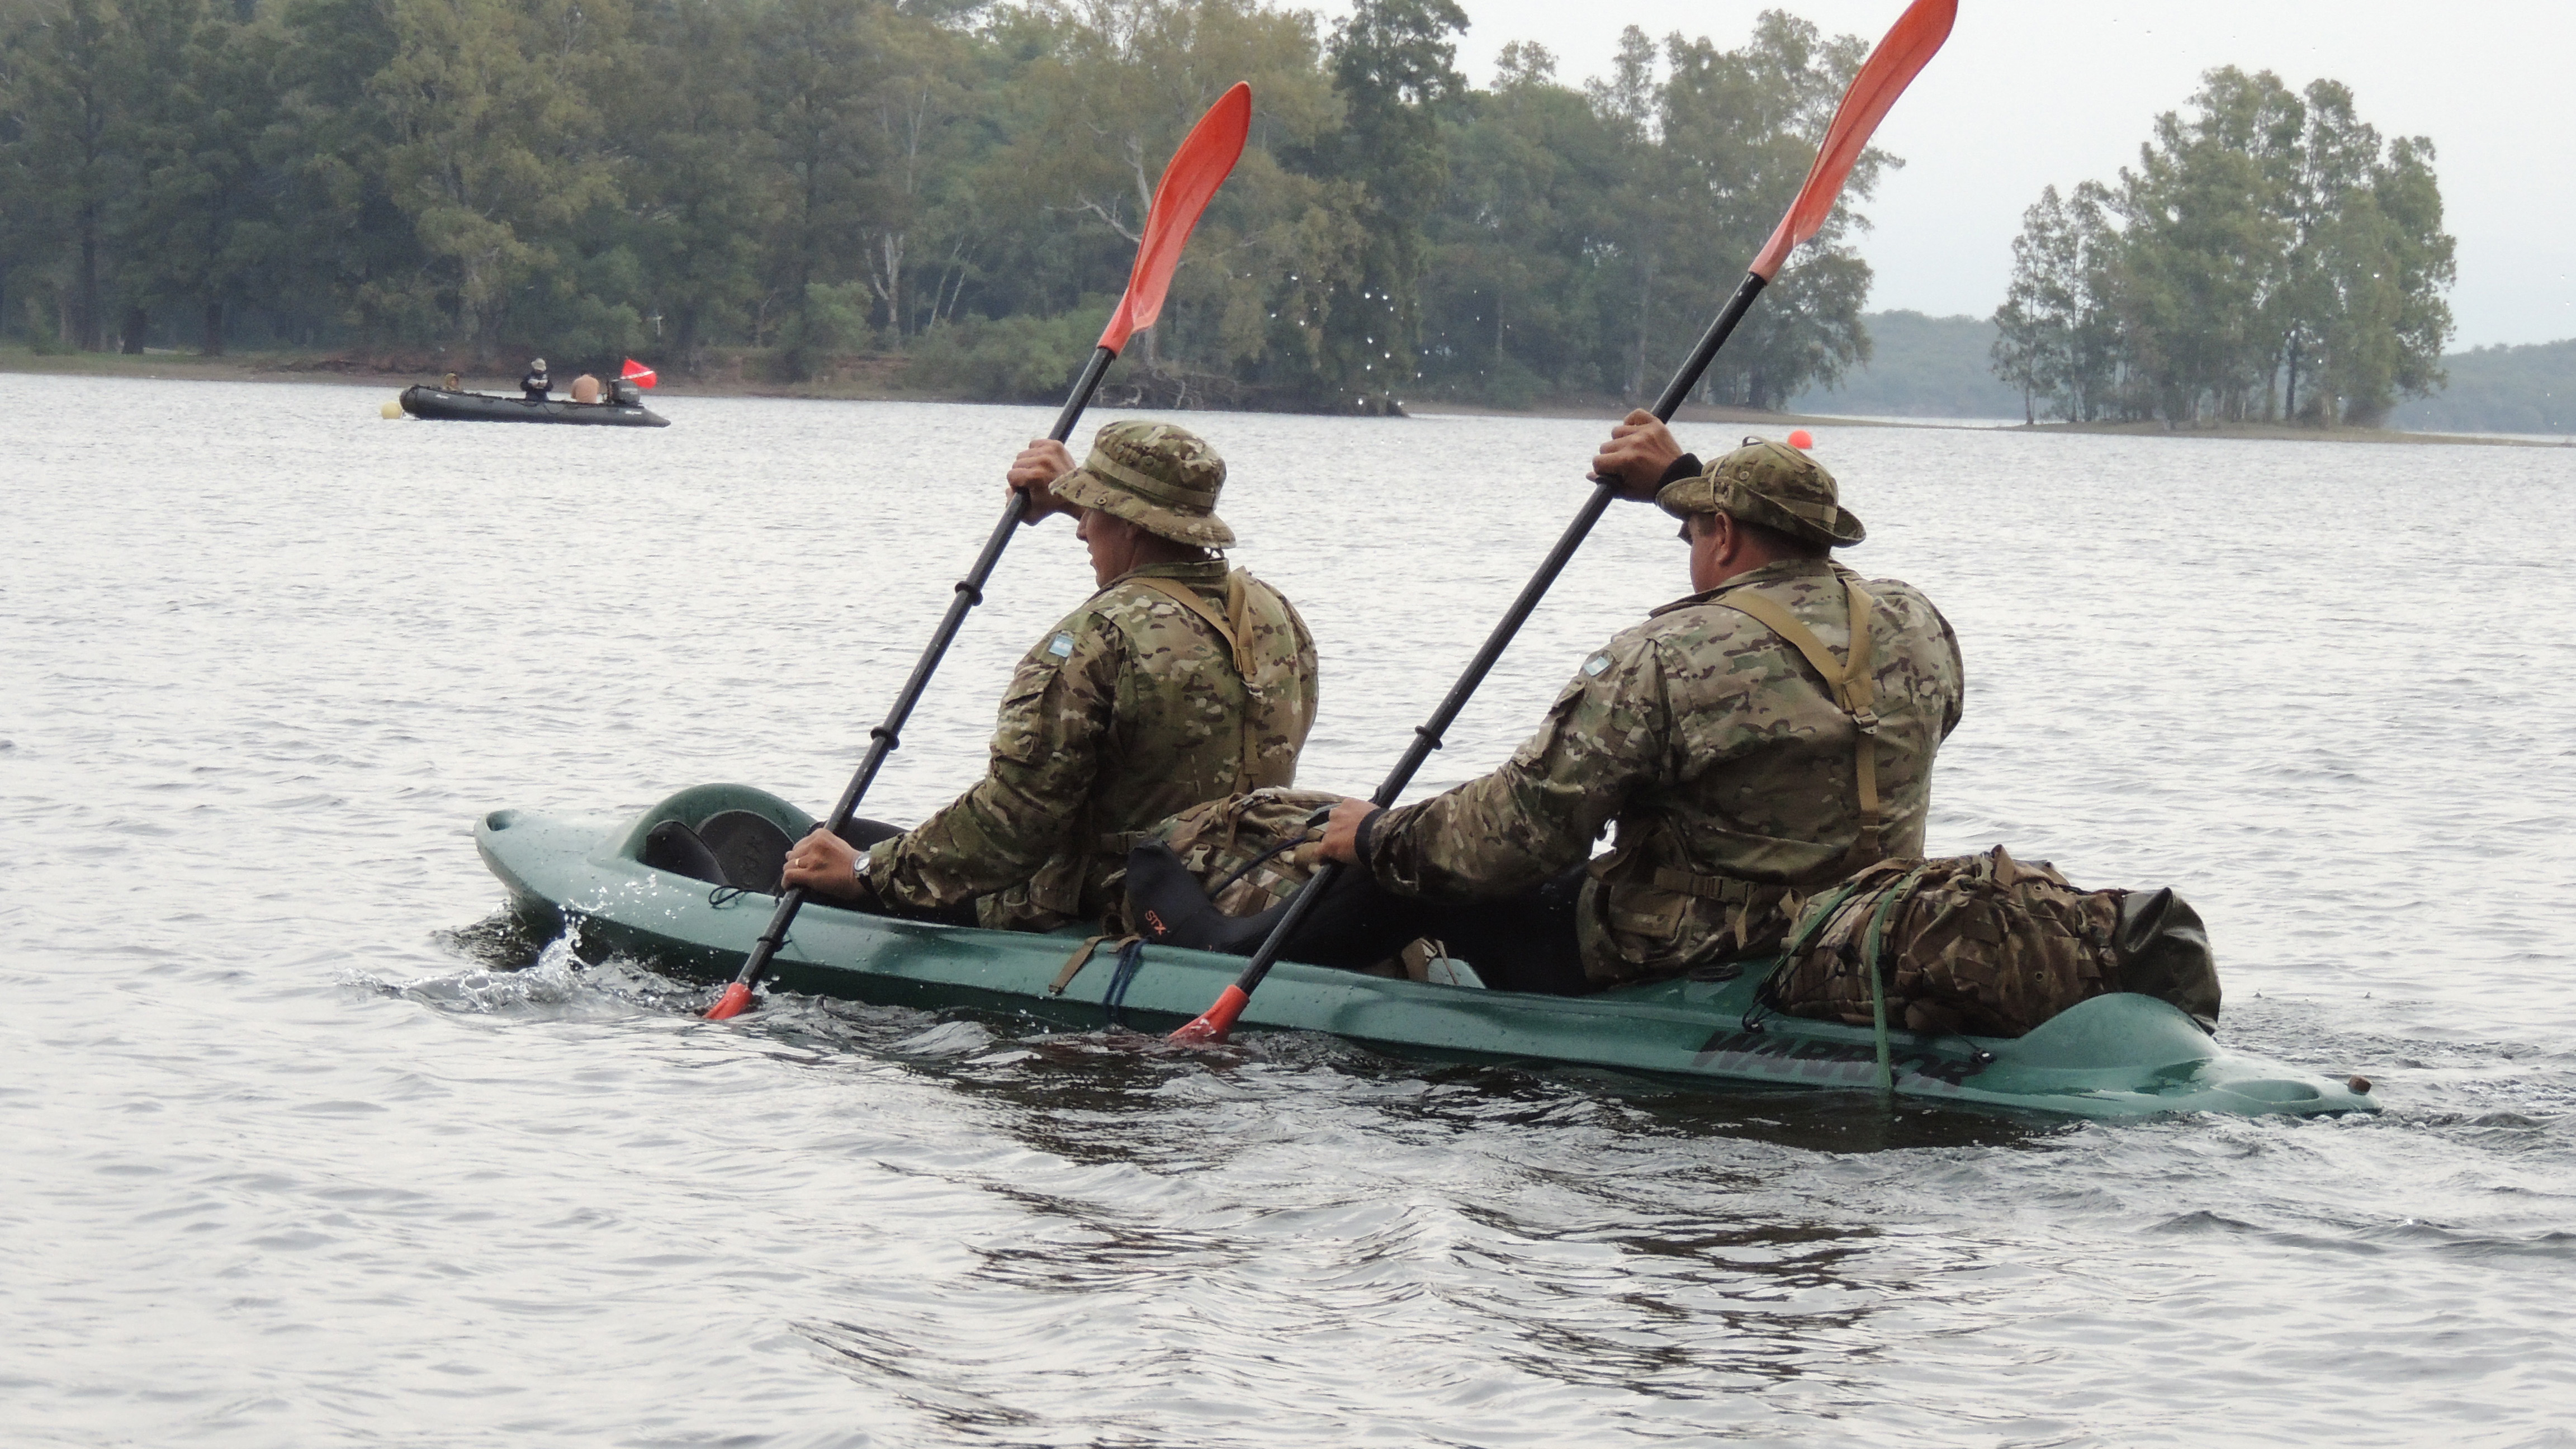 Buzos del Ejército realizaron ejercicios en kayak